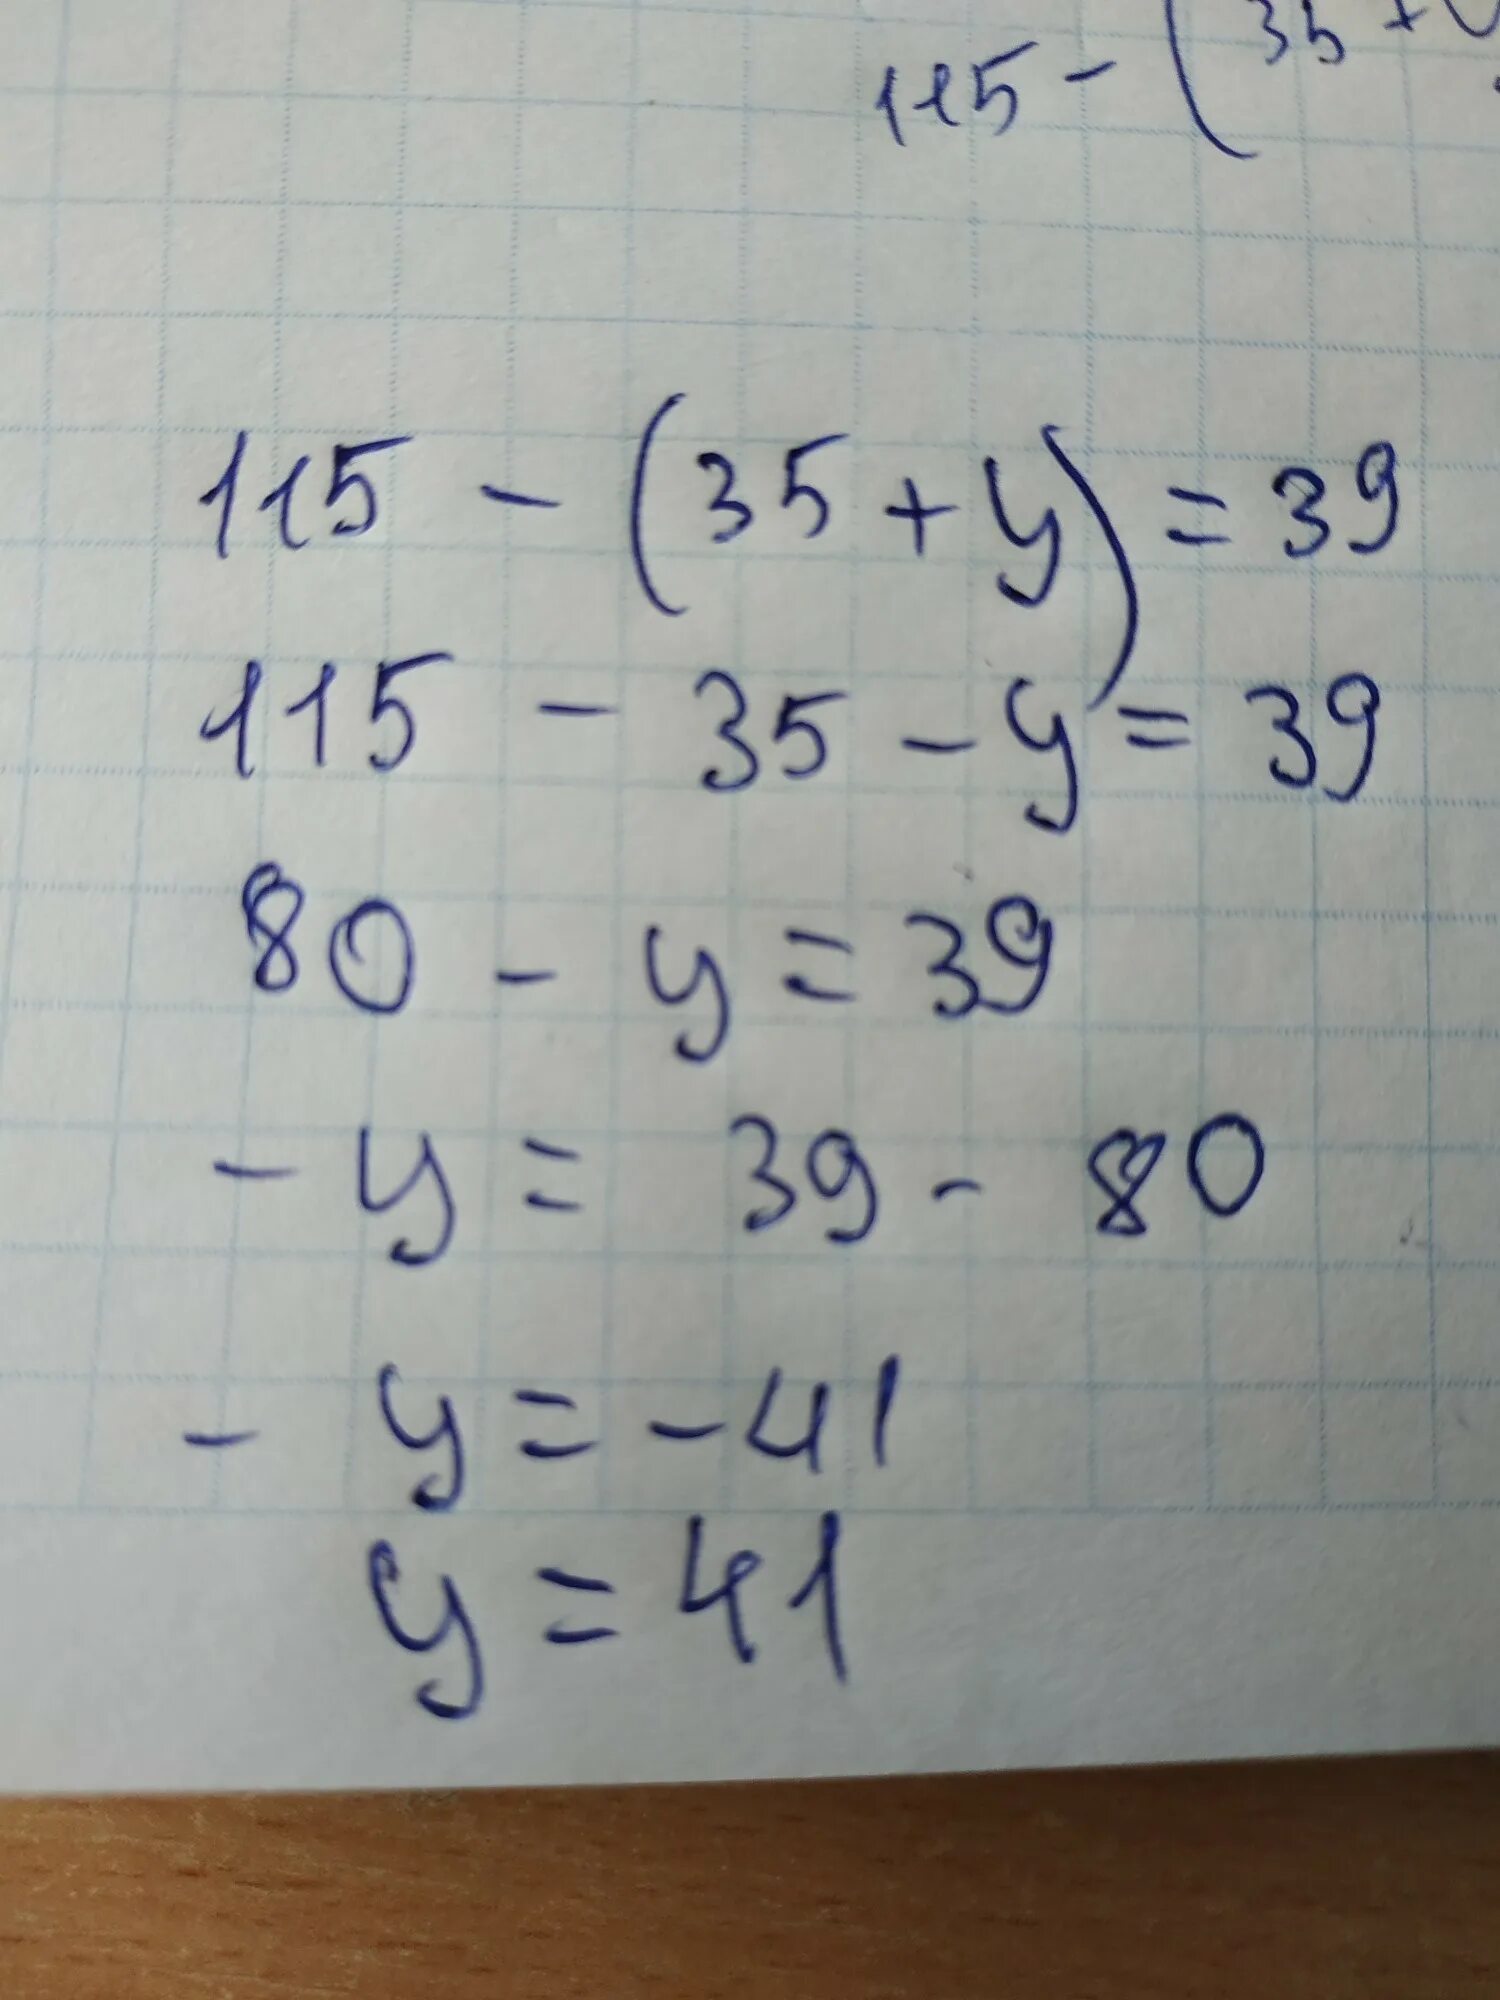 35 плюс 6. 115 35 Y равно 39. Уравнение 115- 35+y 39. 115-(35+У)=39. 115-(35+У)=39 решение.